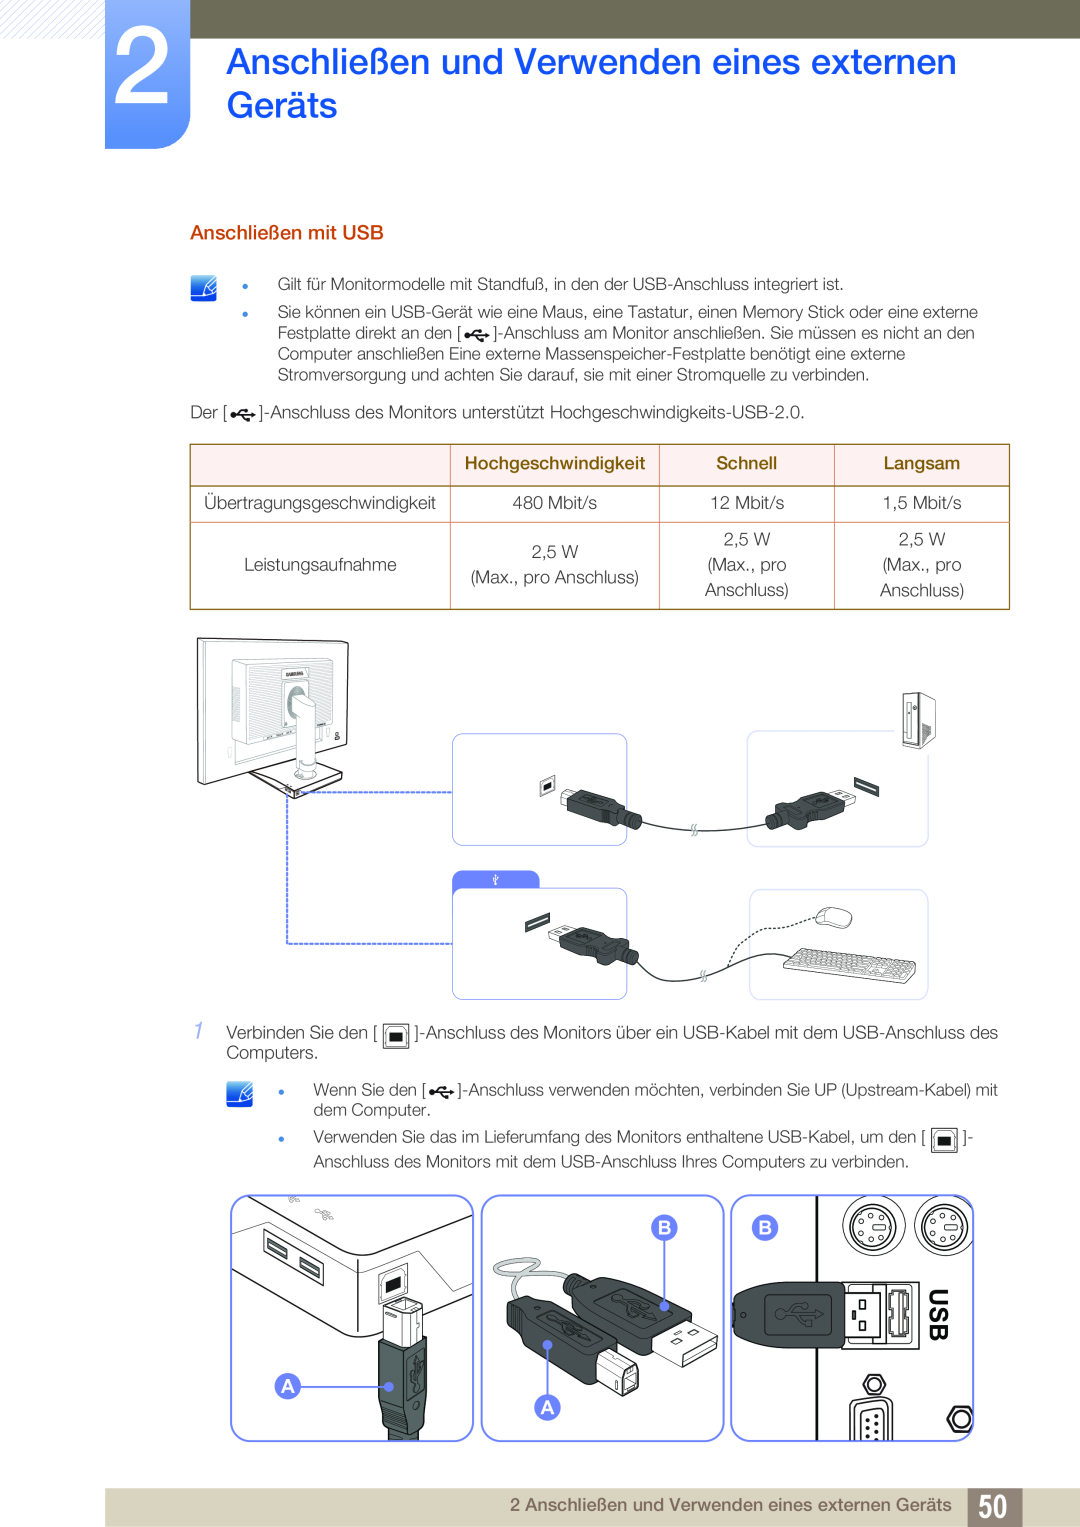 Samsung LS27E65UXS/EN AnschließenGeräts und Verwenden eines externen, Anschließen mit USB, Hochgeschwindigkeit, Schnell 